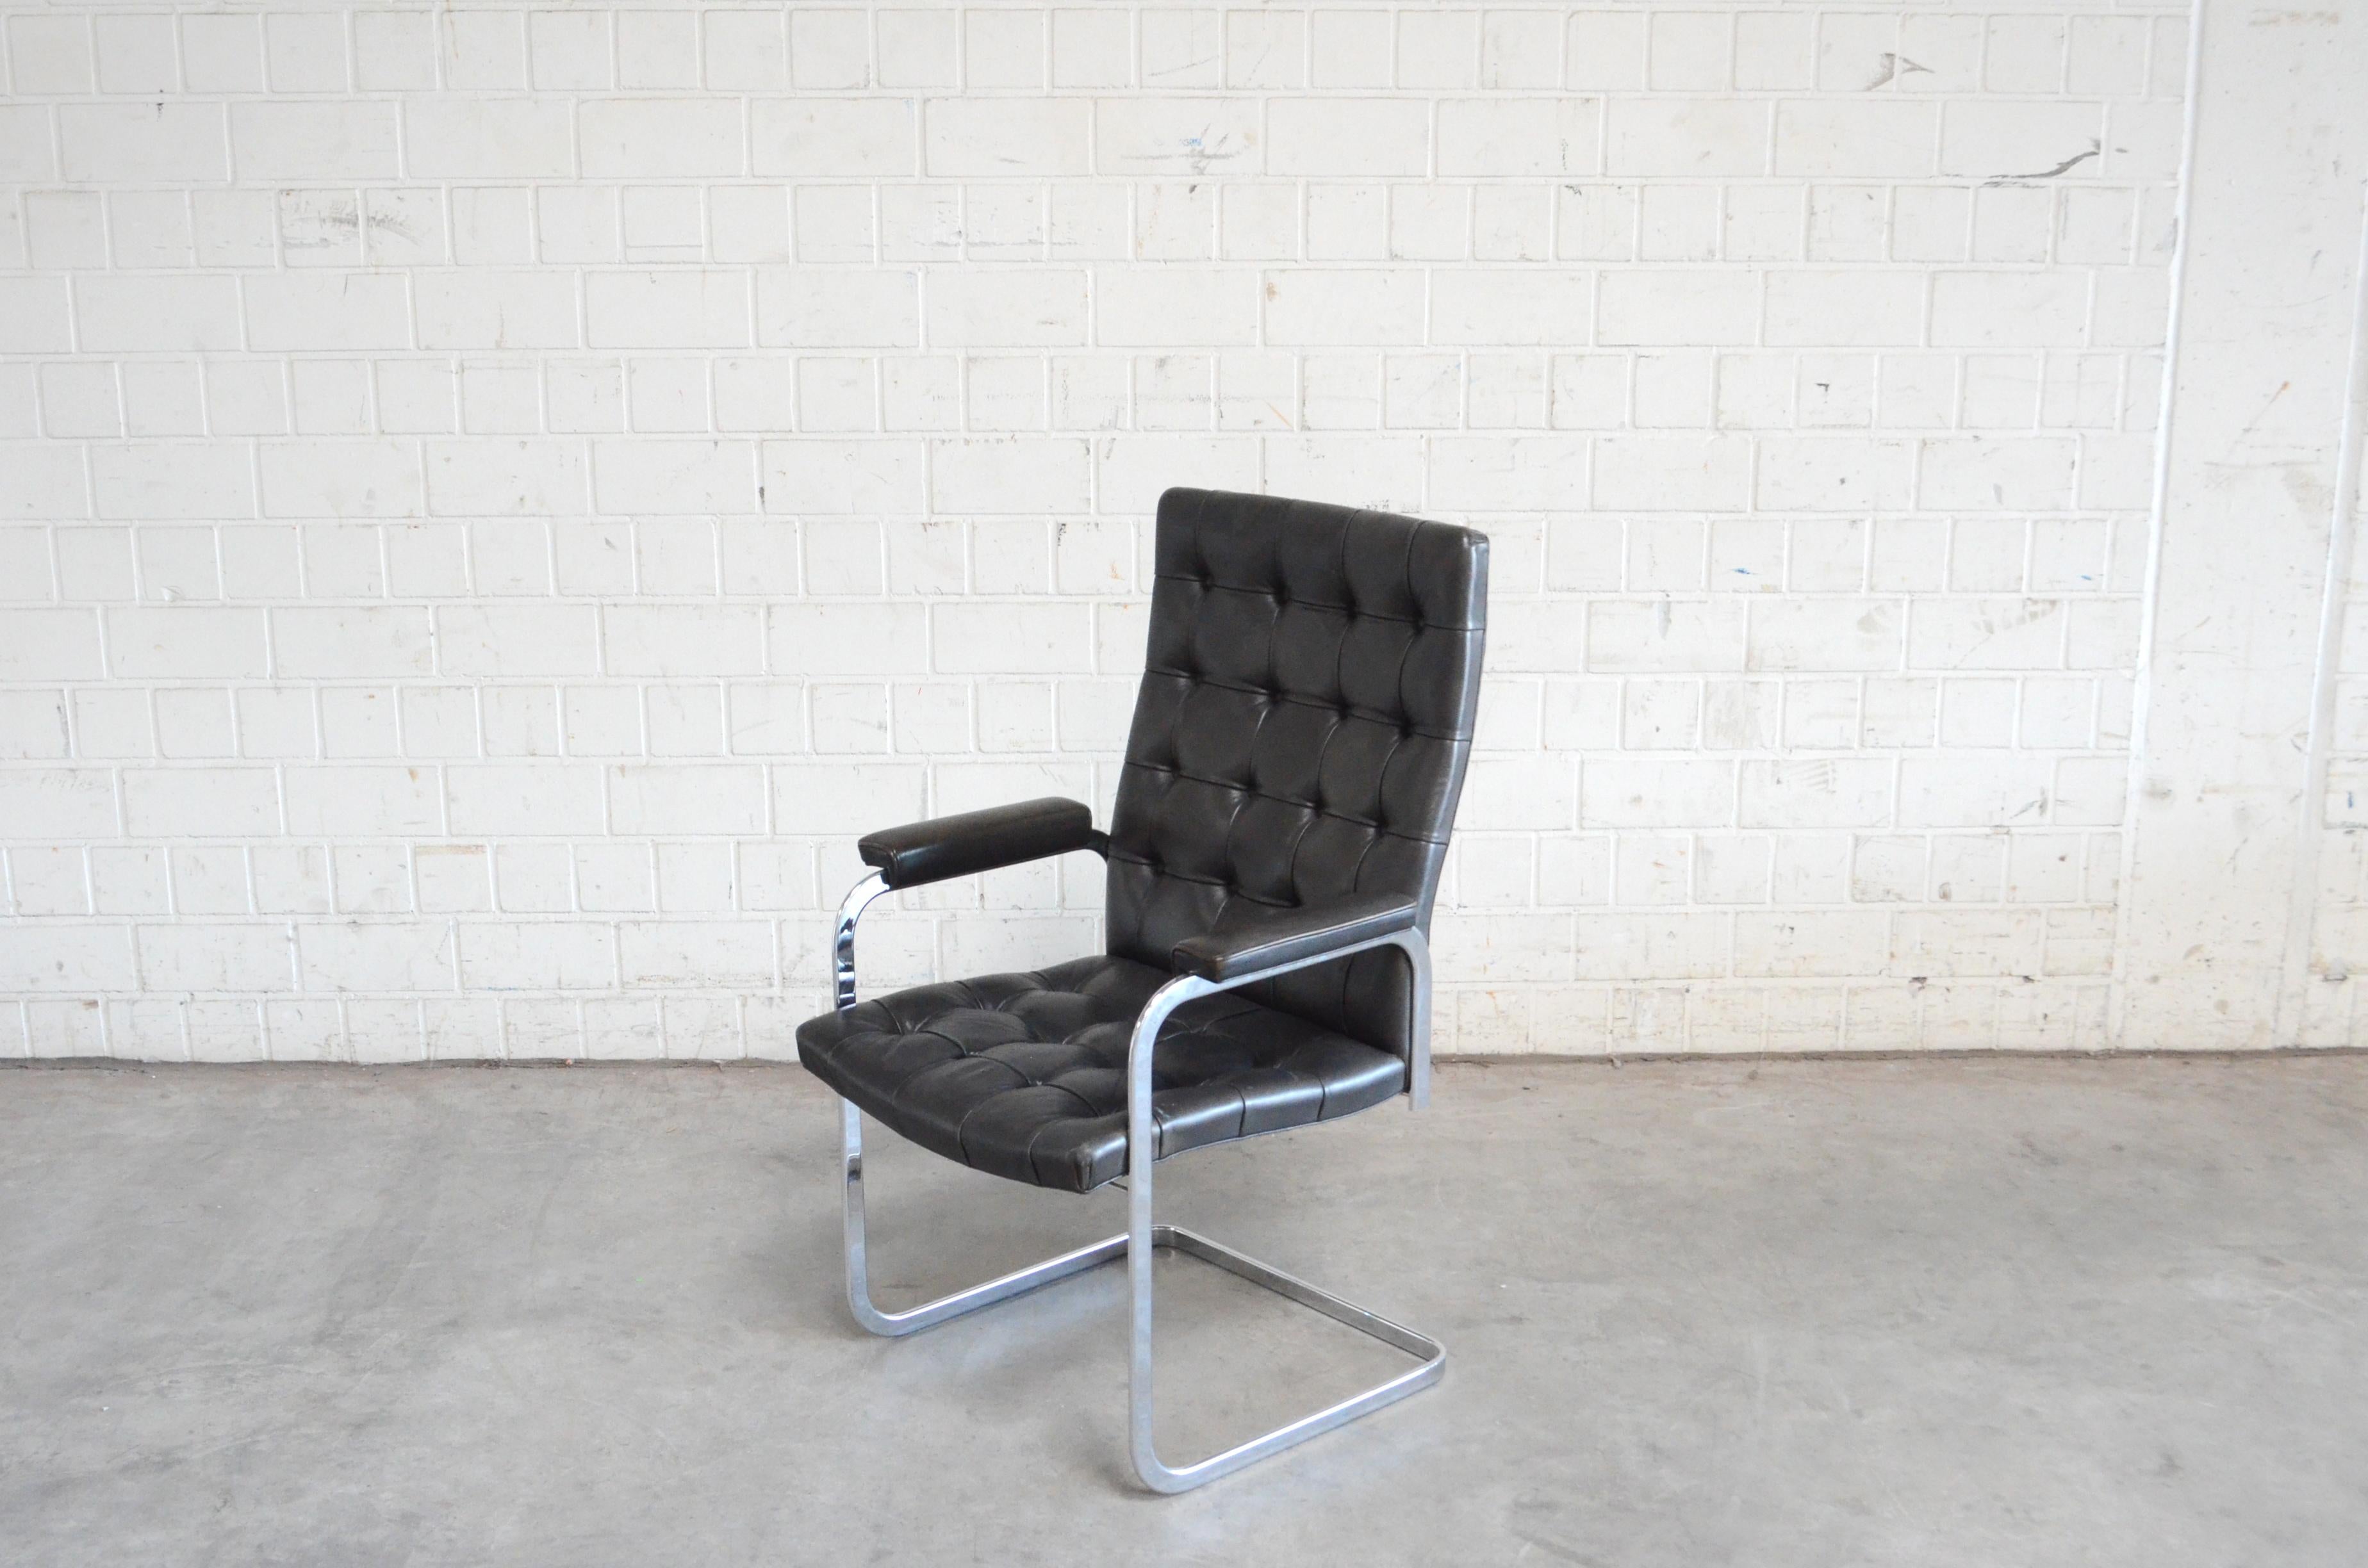 Swiss Robert Haussmann De Sede Rh 305 High Back Chair Black For Sale